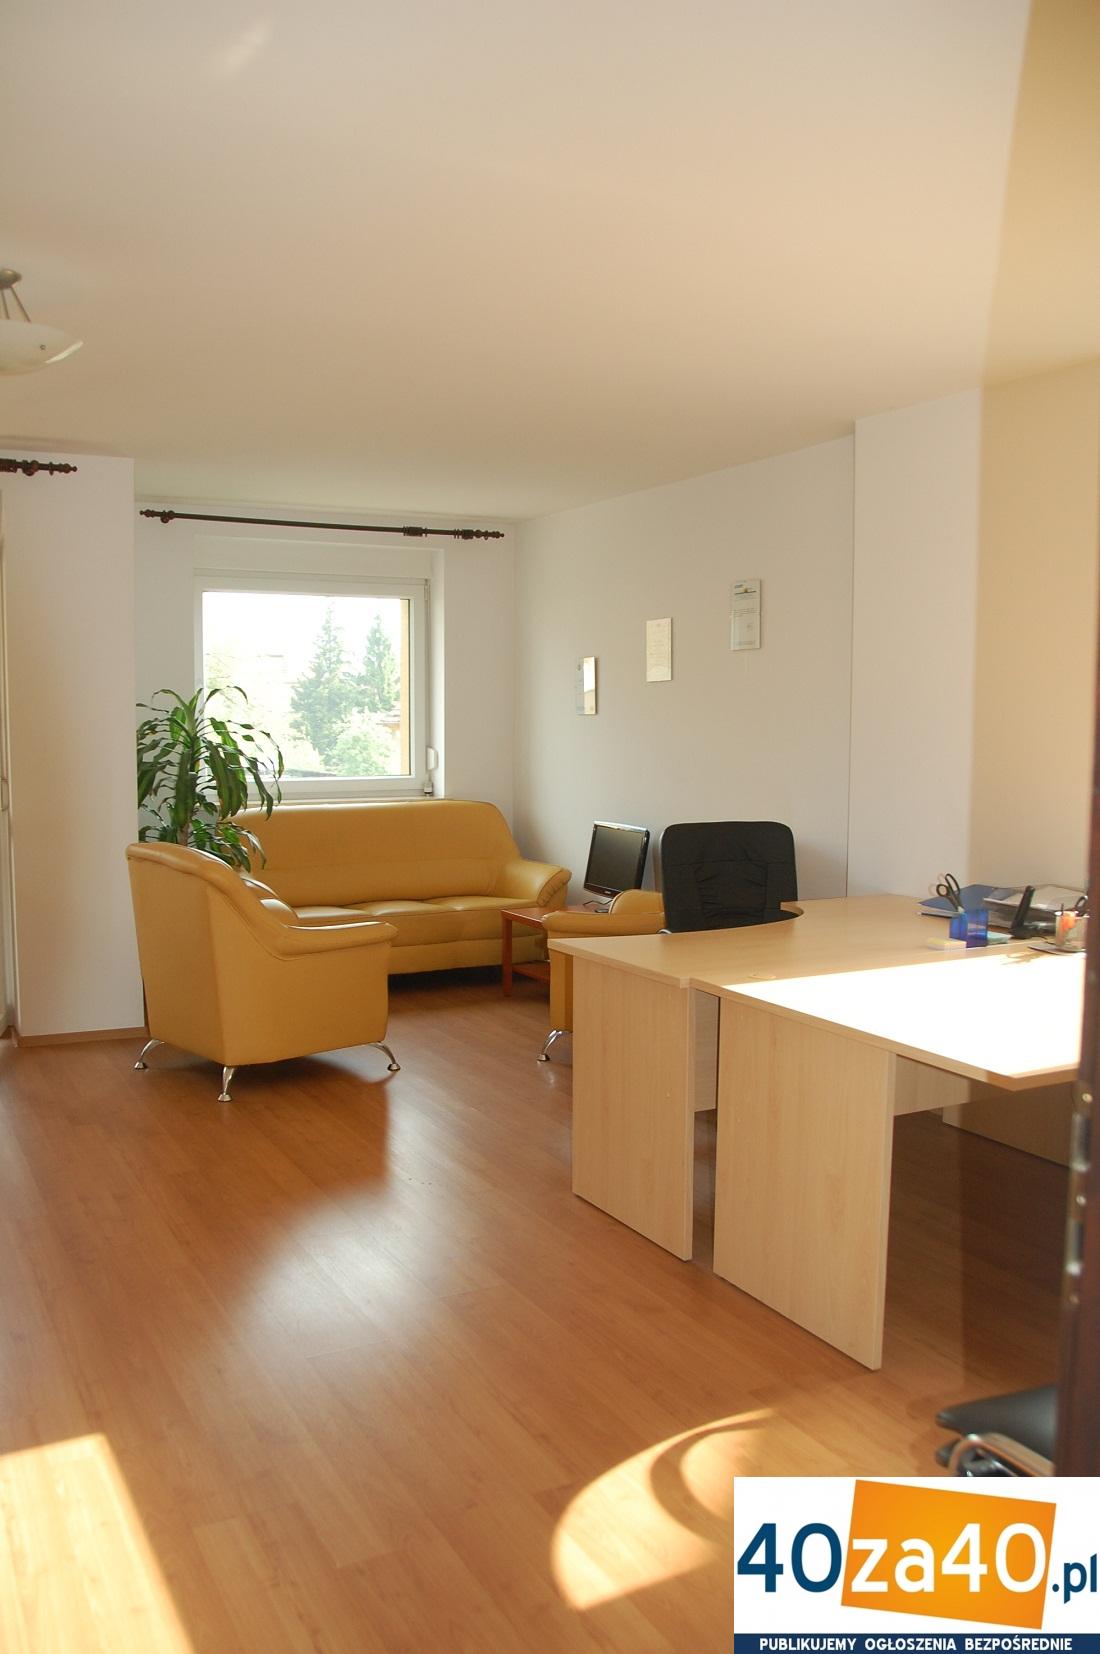 Dom do wynajęcia, powierzchnia: 190 m2, pokoje: 6, cena: 3 500,00 PLN, Wrocław, kontakt: 0717223989